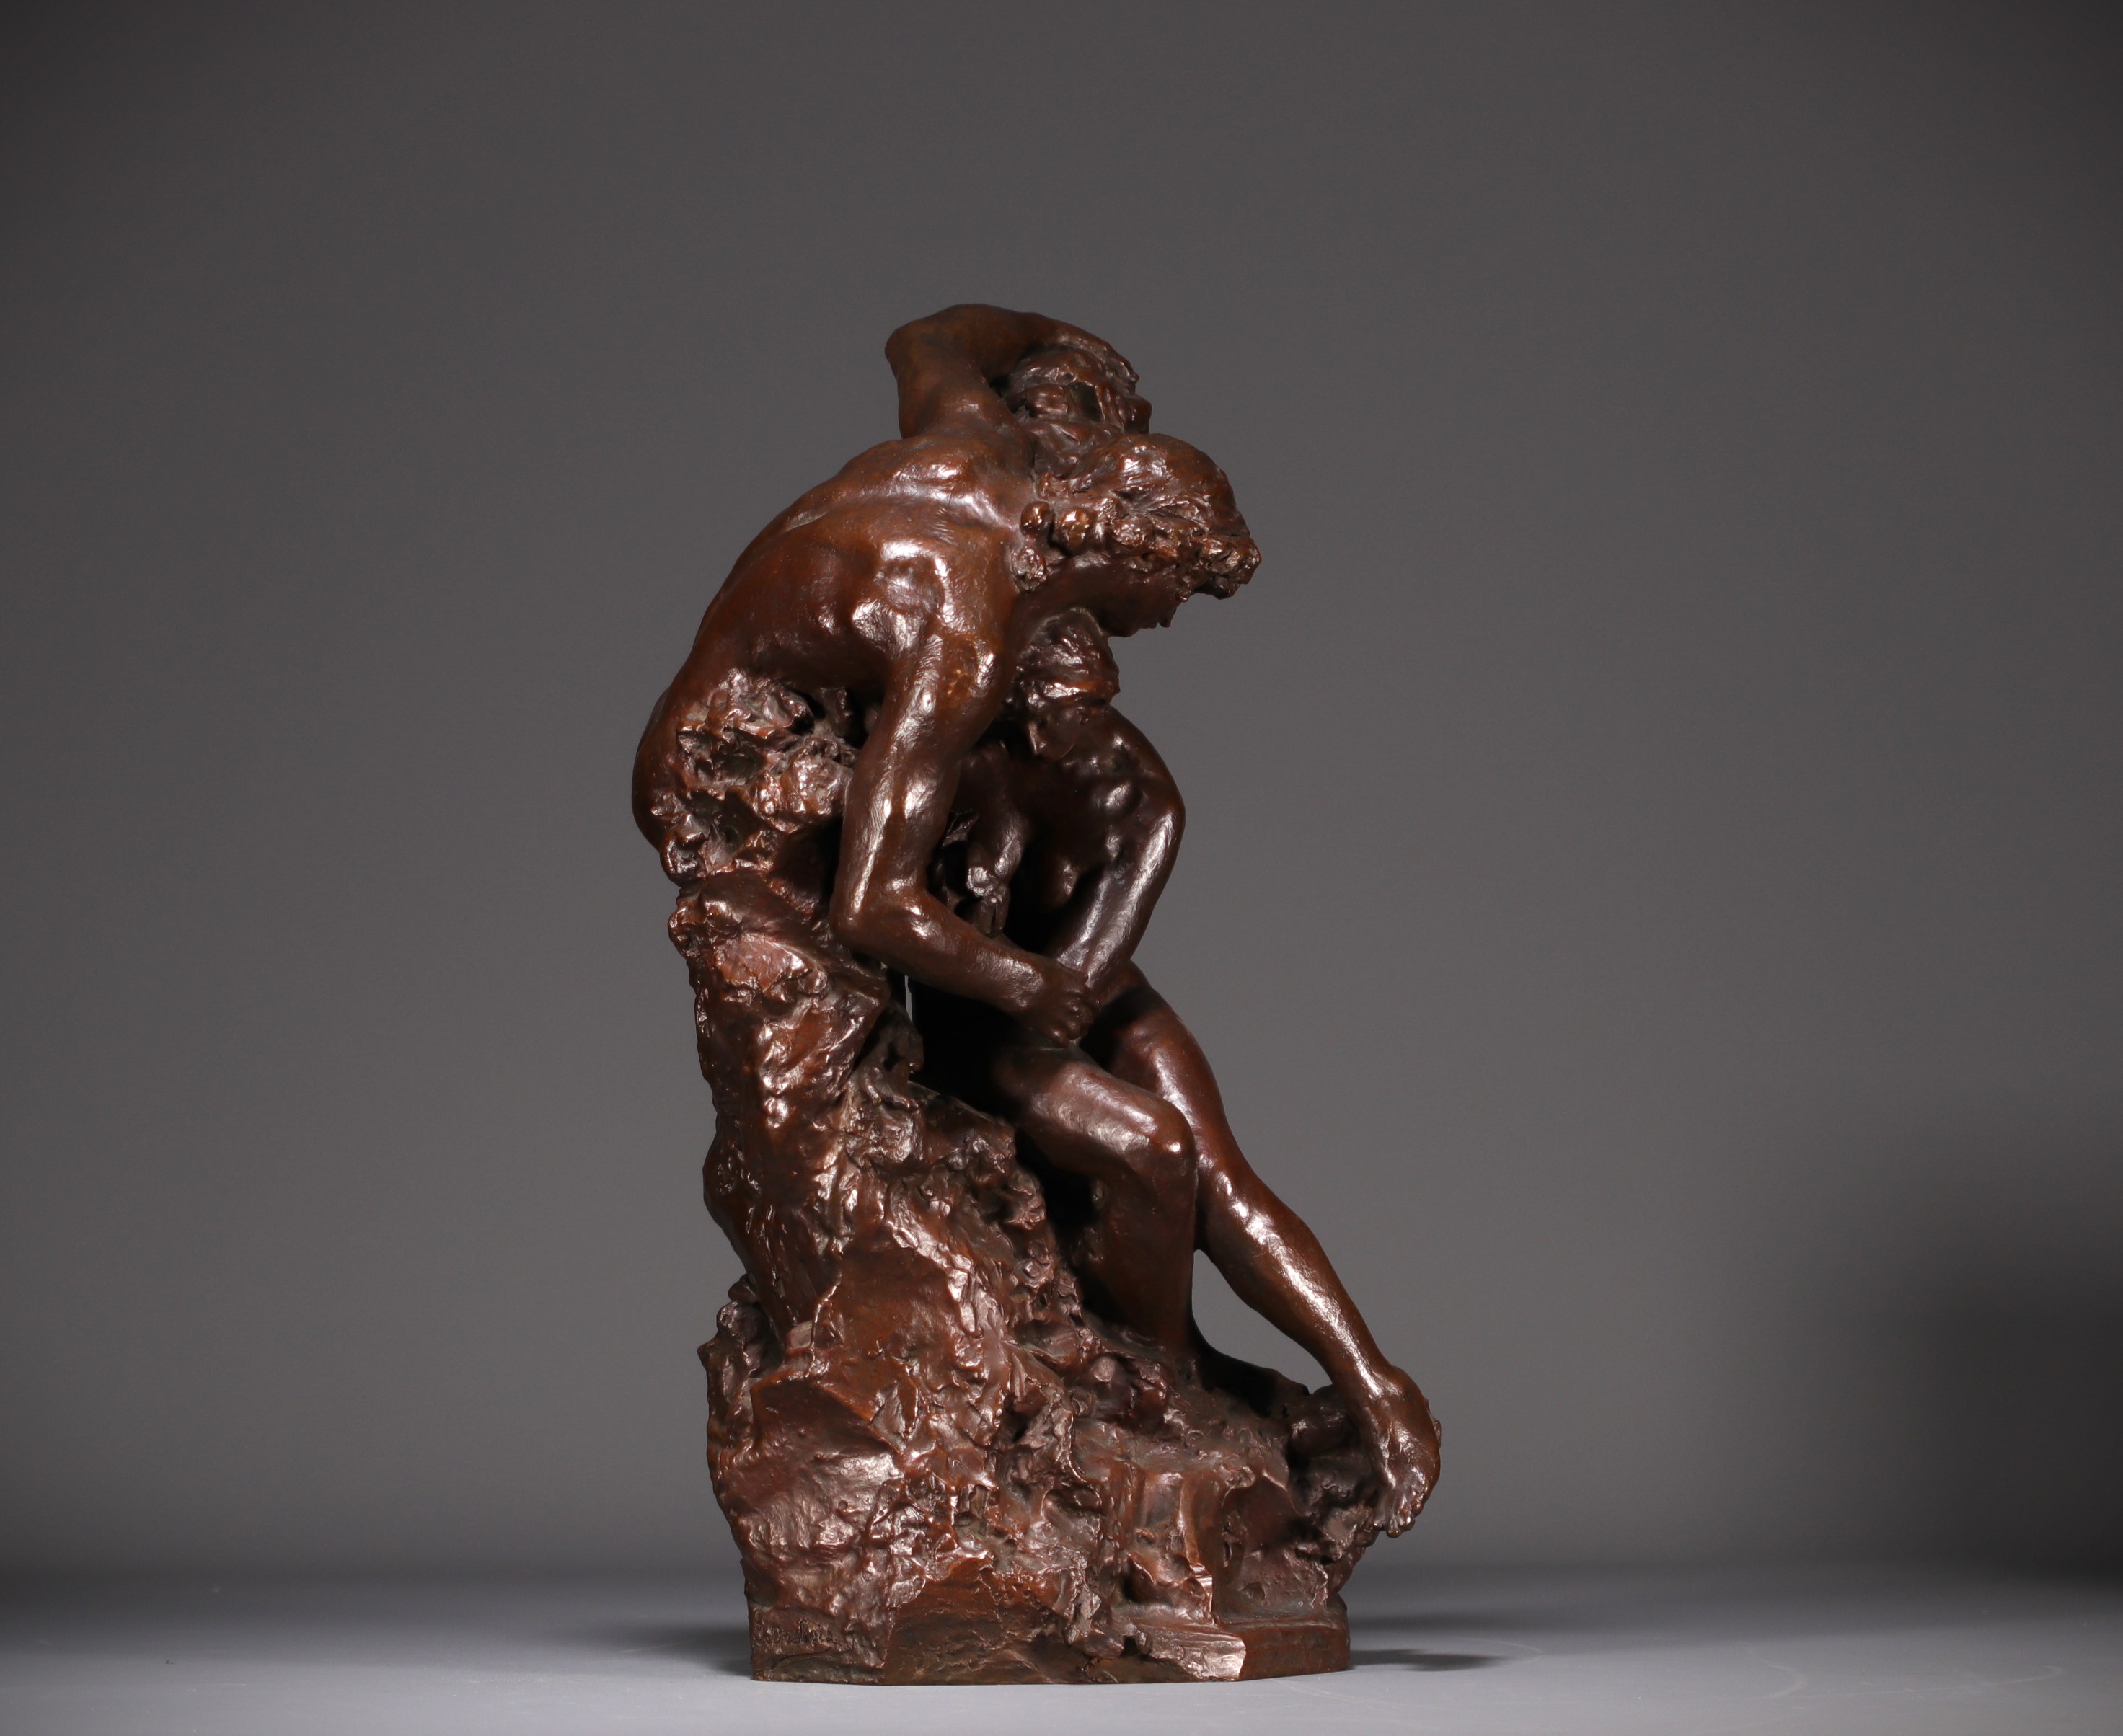 Jules DESBOIS (1851-1935) "L'Amour" Lost wax bronze, signed J. Desbois, nÂ°1, Stamp Hebrard foundry. - Image 2 of 7